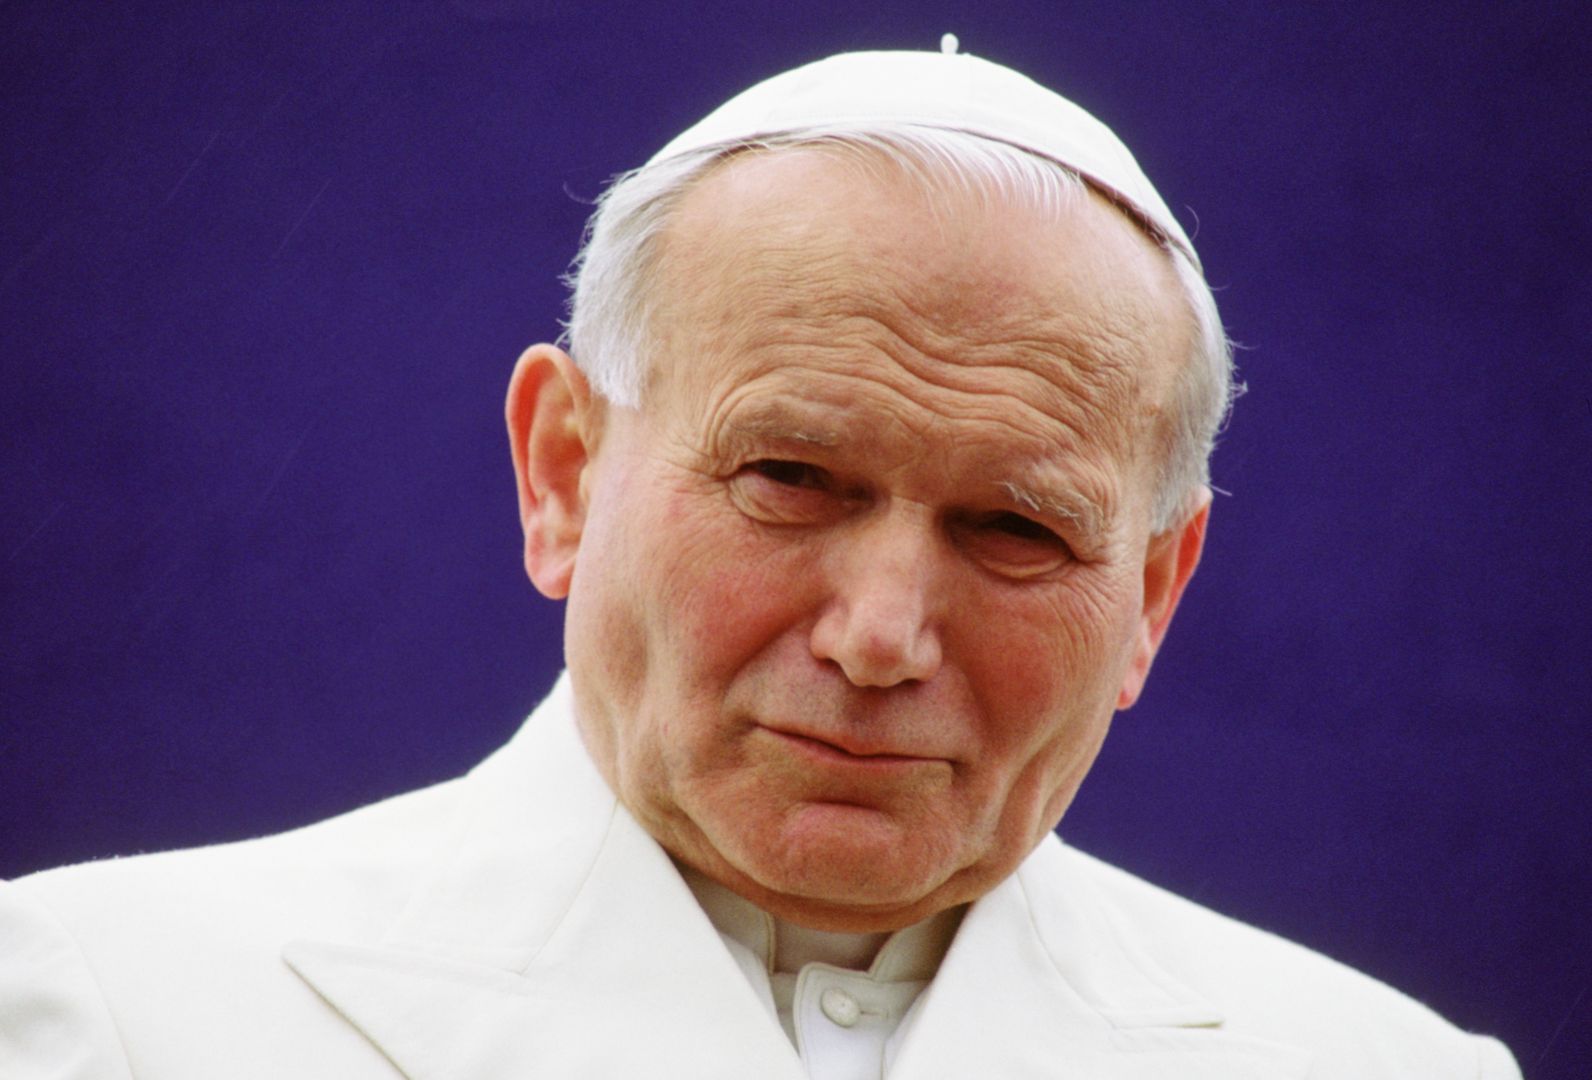 W Toruniu zdemolowano pomnik Jana Pawła II